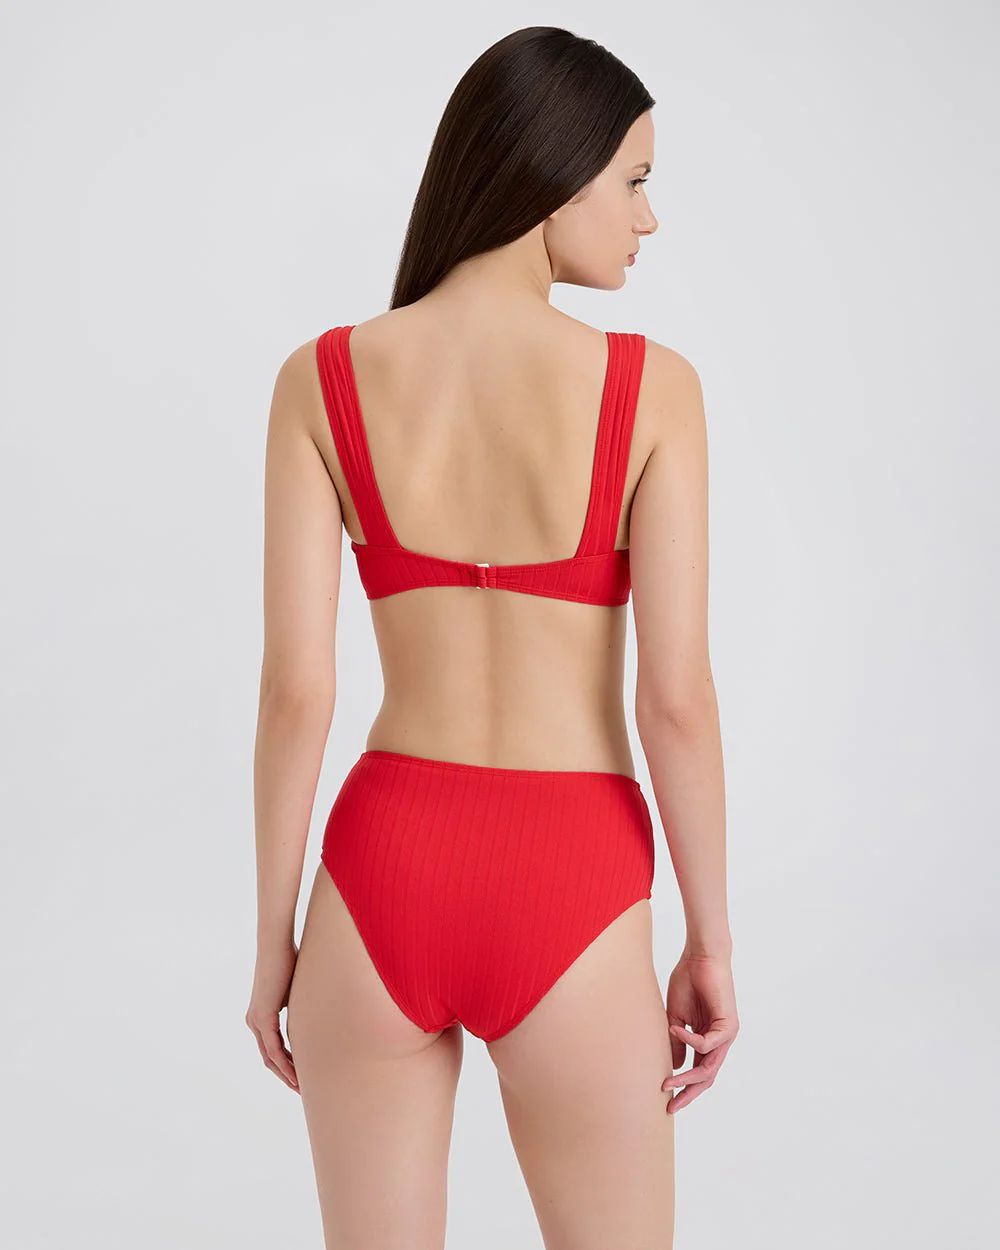 The Lilo Ribbed Bikini Bottom in Lipstick Red | Solid & Striped